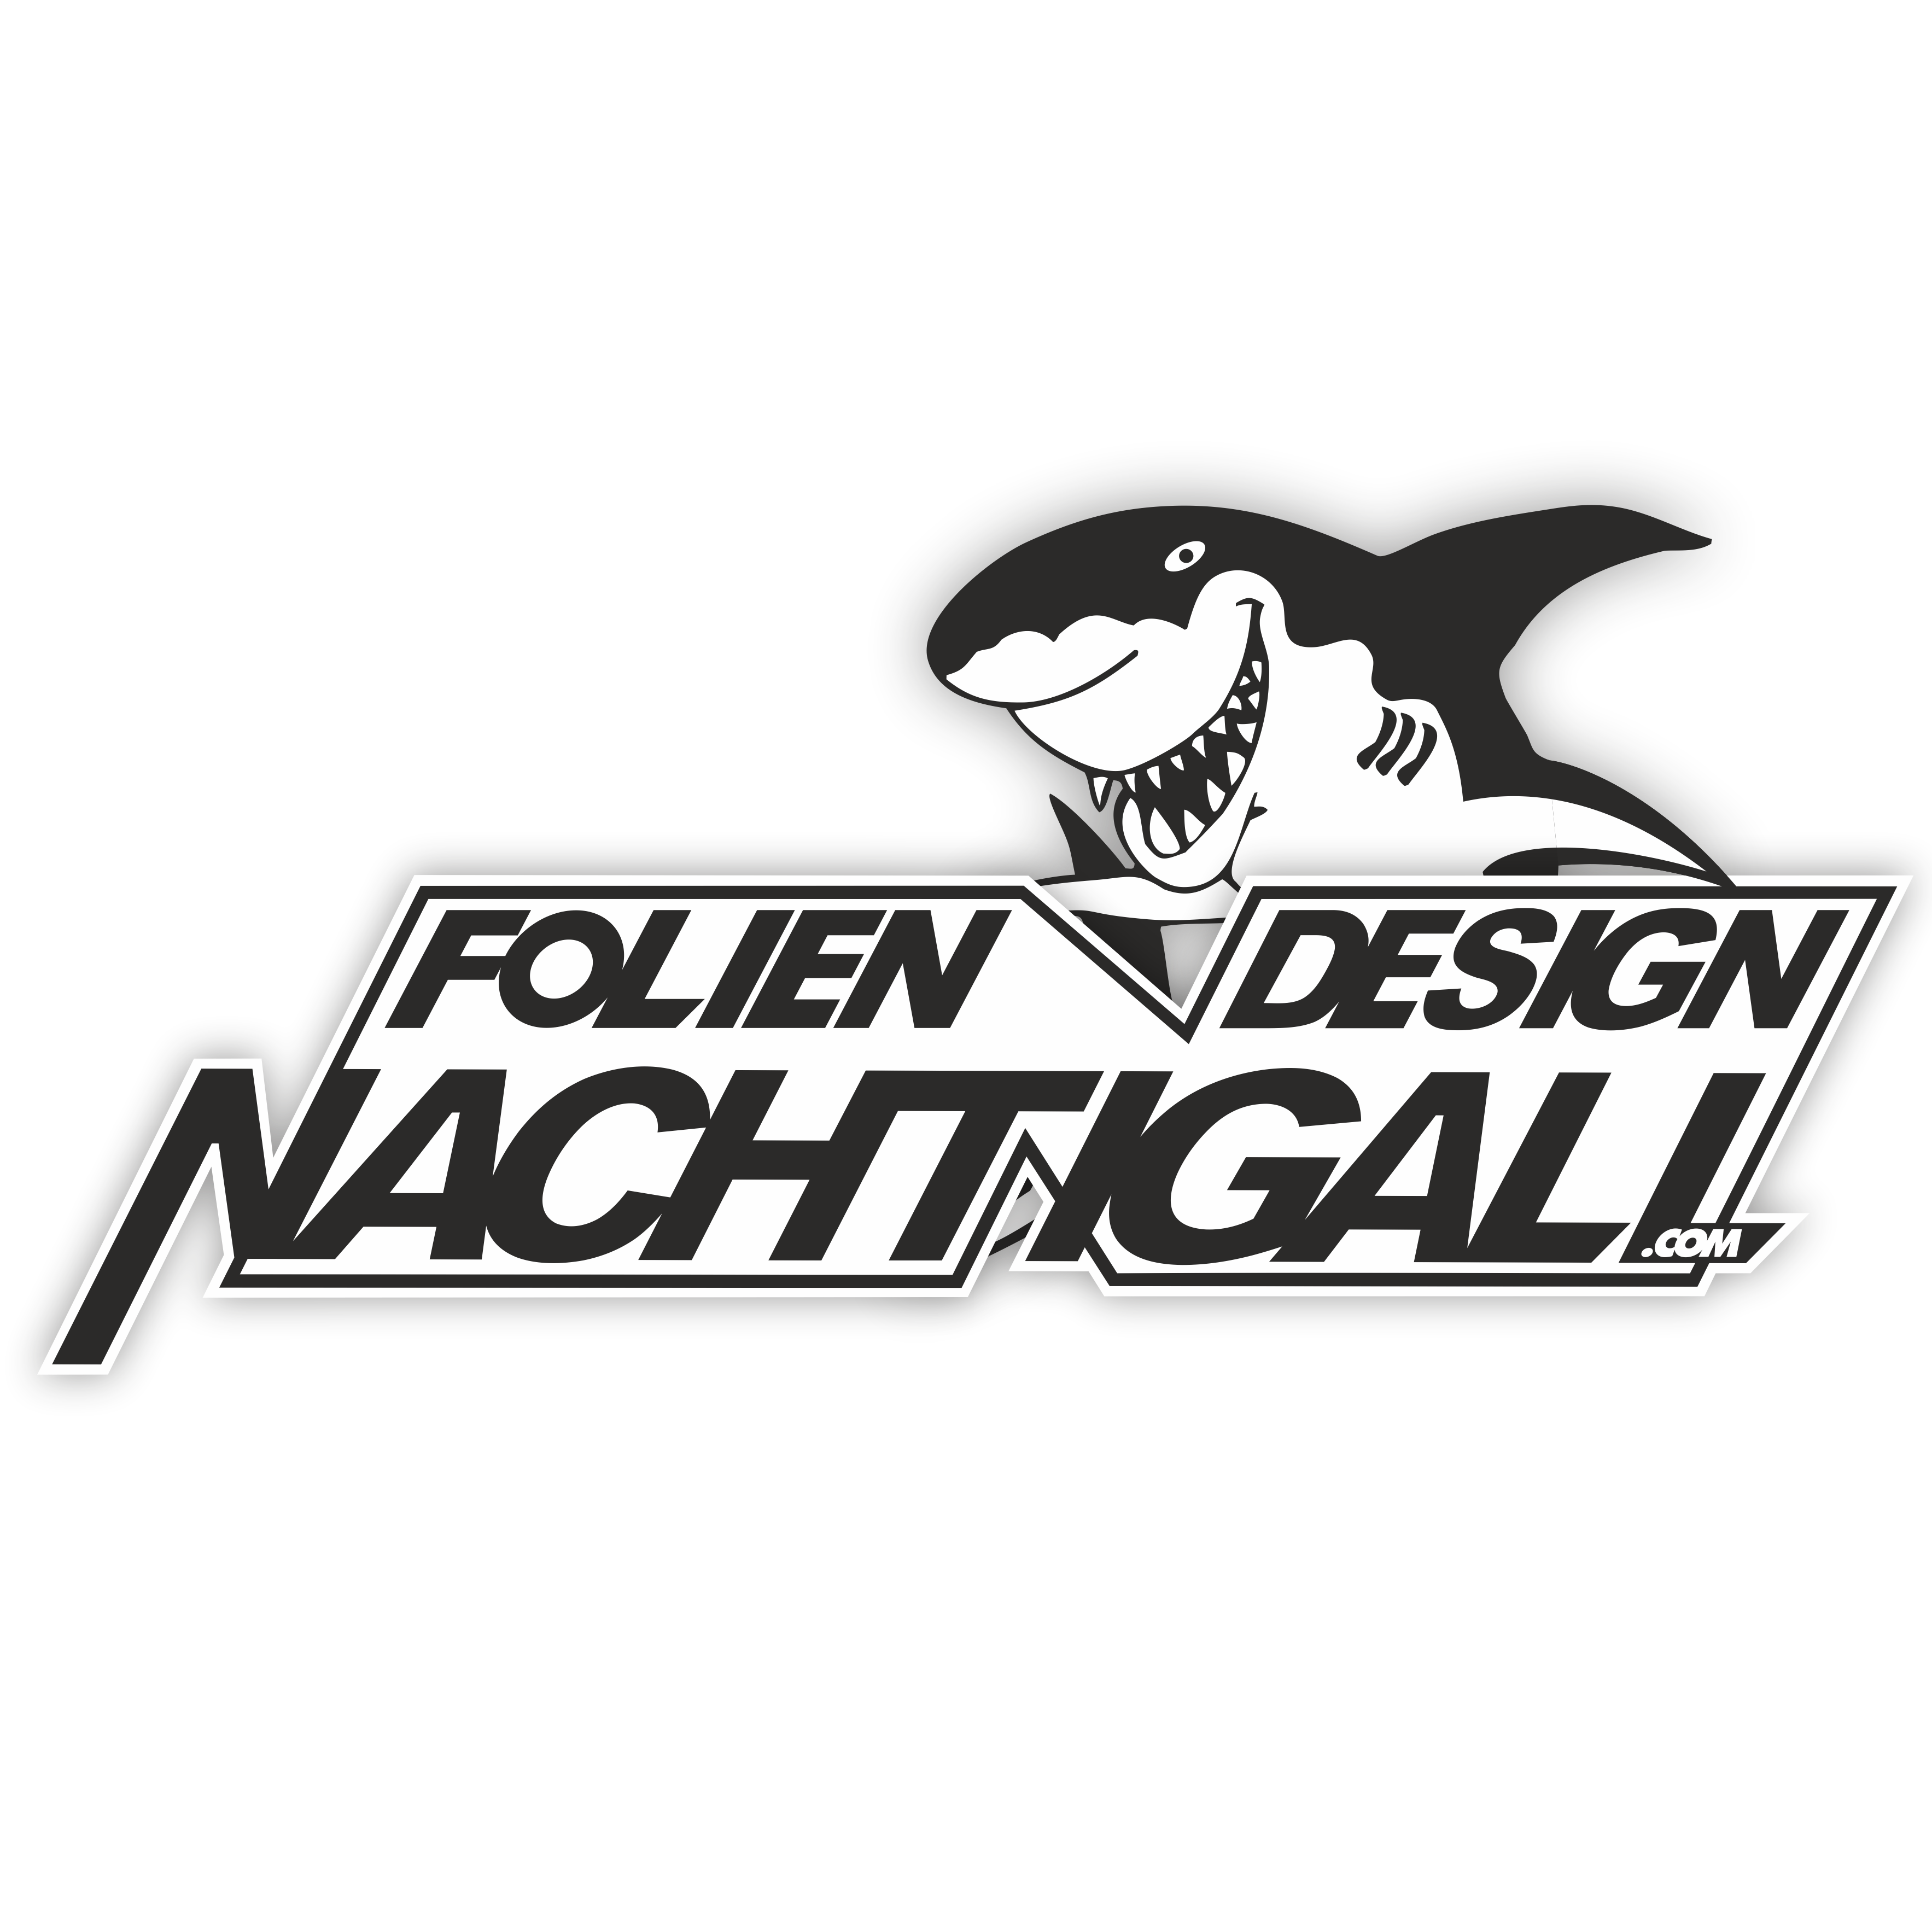 Nachtigall Folien-Design Werbetechnik Logo